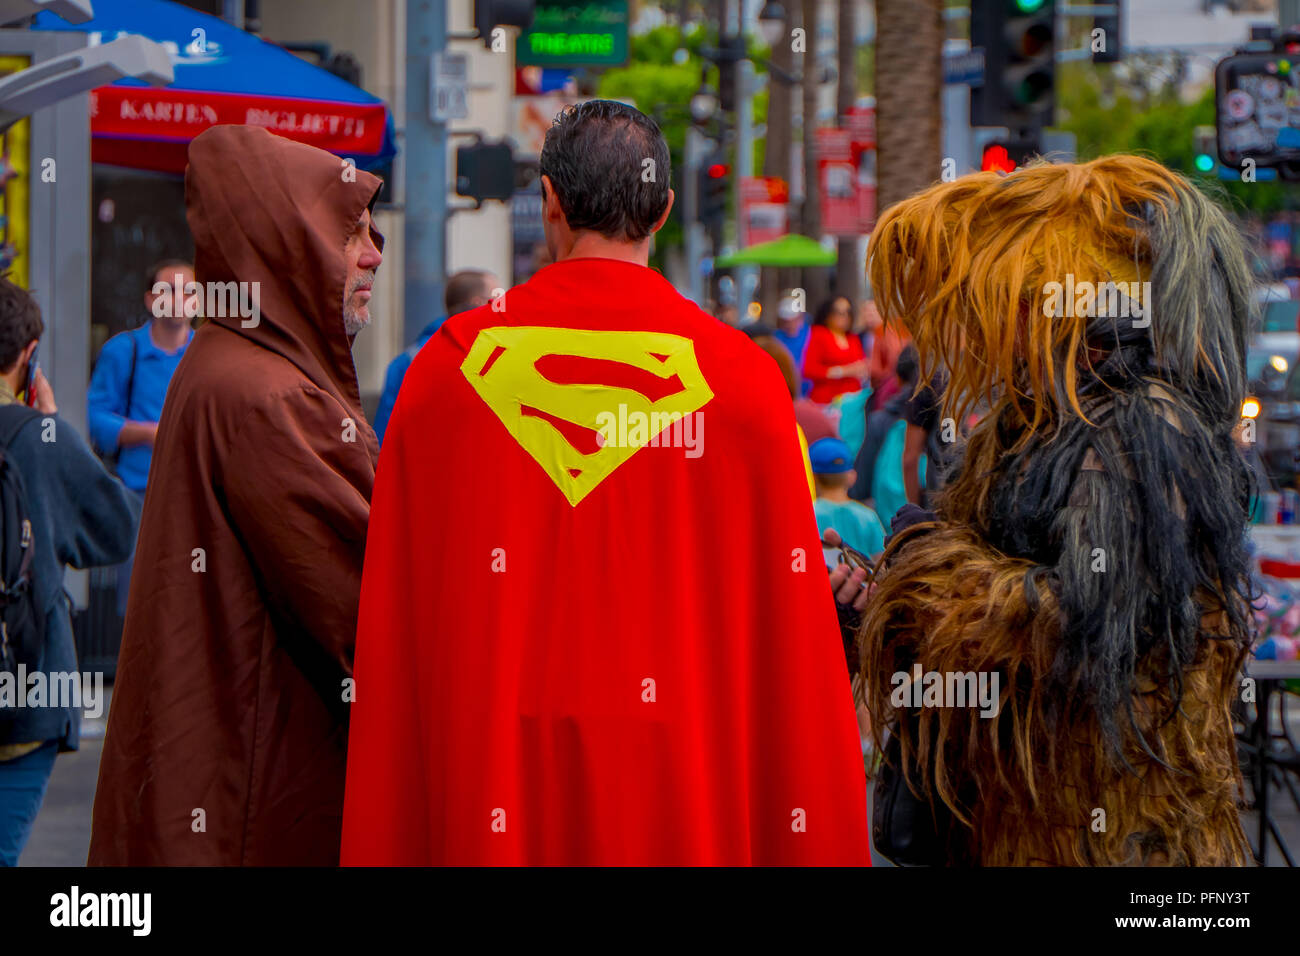 Los Angeles, California, USA, Junio 15, 2018: Vista exterior de personas no identificadas usando diferentes disfraces, Superman, Chewbacca y jedi en las calles de Los Angeles en Hollywood Foto de stock